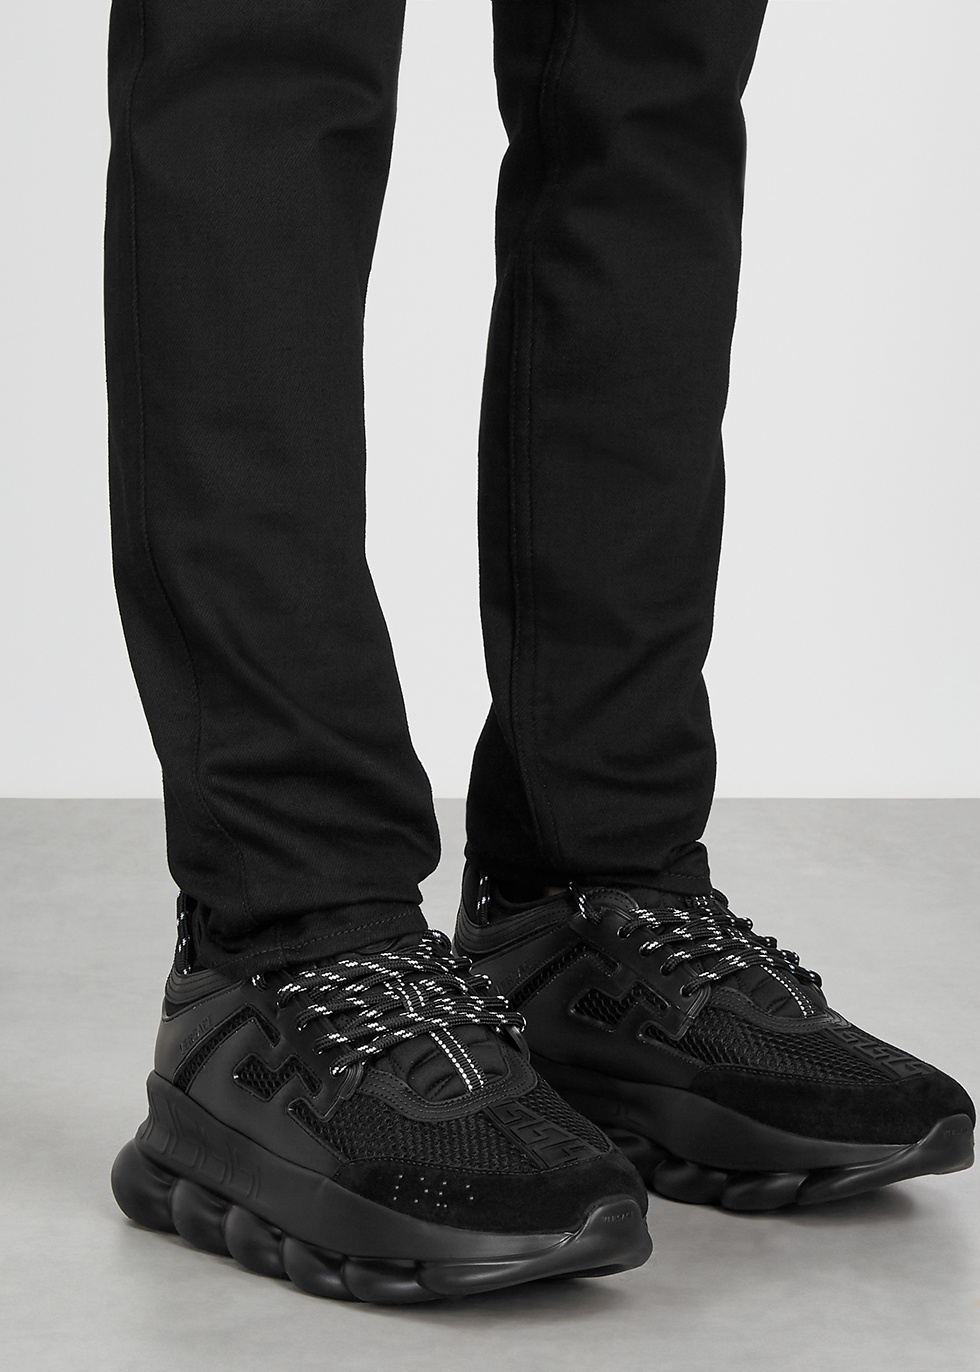 chain reaction shoes black